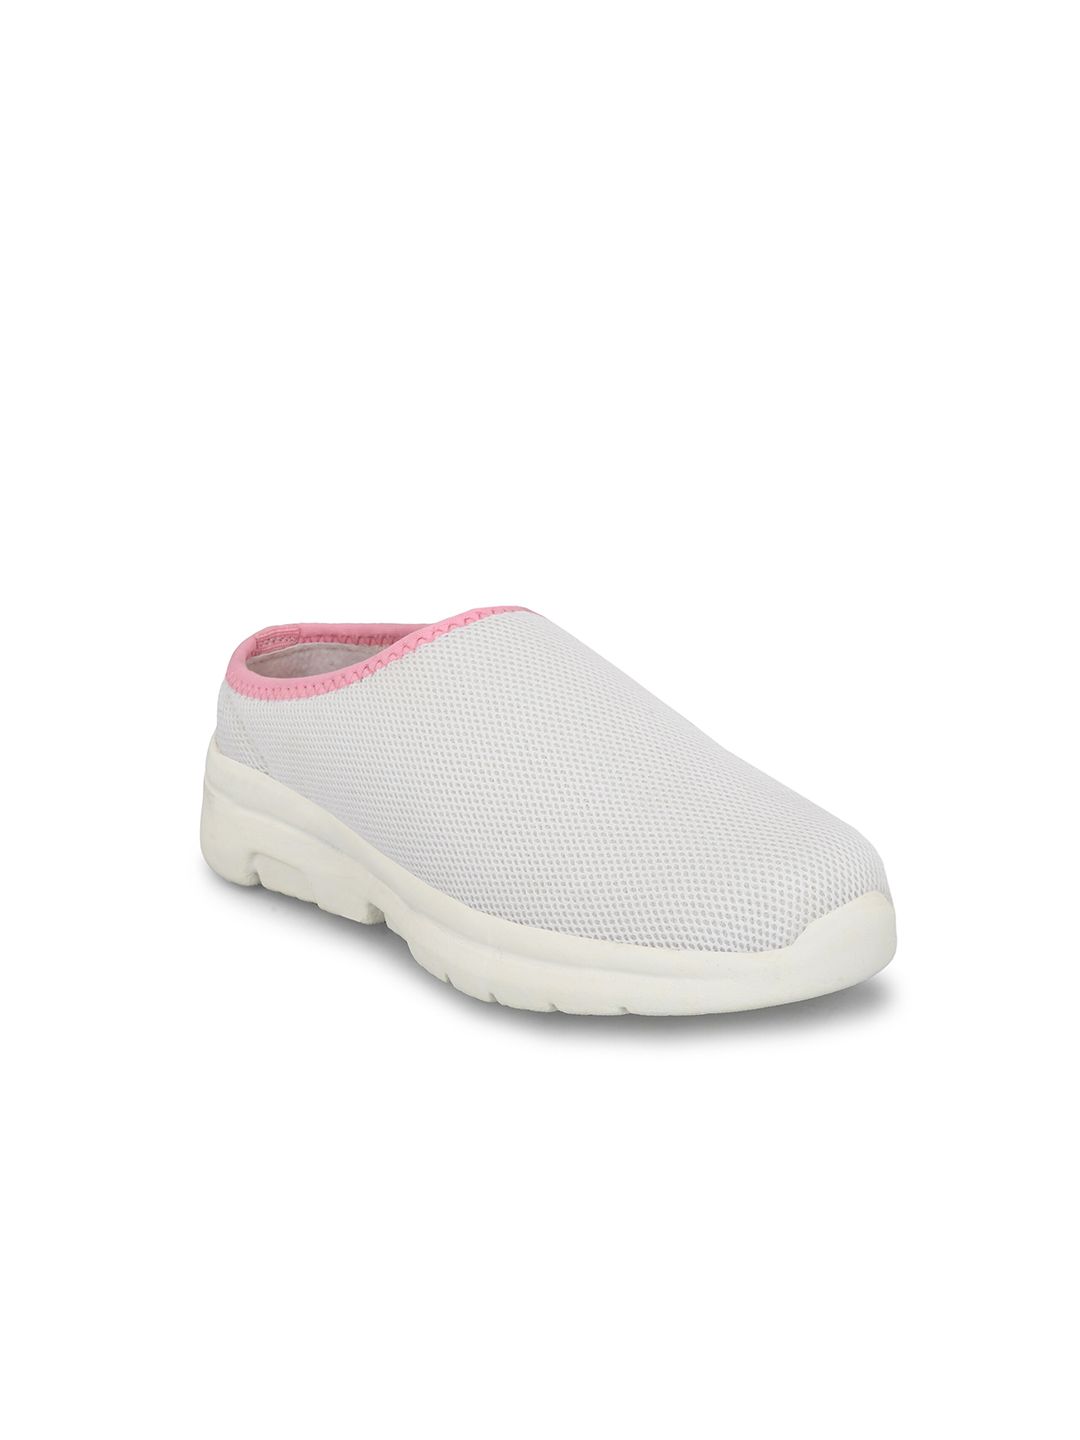 Yuuki Women White Mesh Walking Non-Marking Shoes Price in India